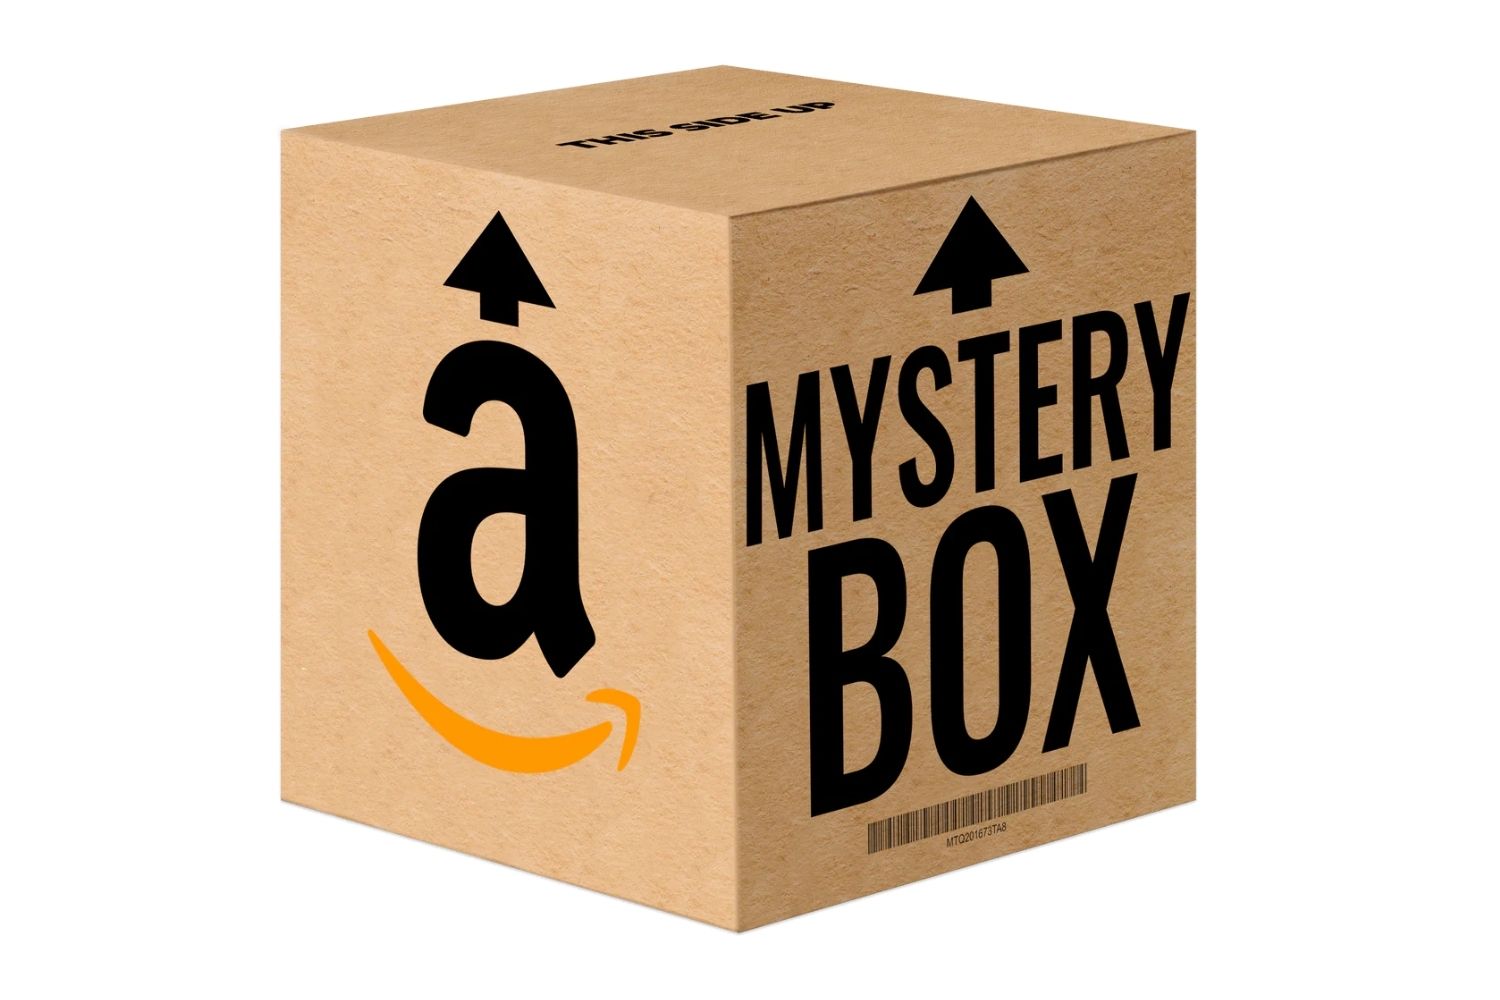 Mystery Box Mystery box, Box, Mystery, mystery box  